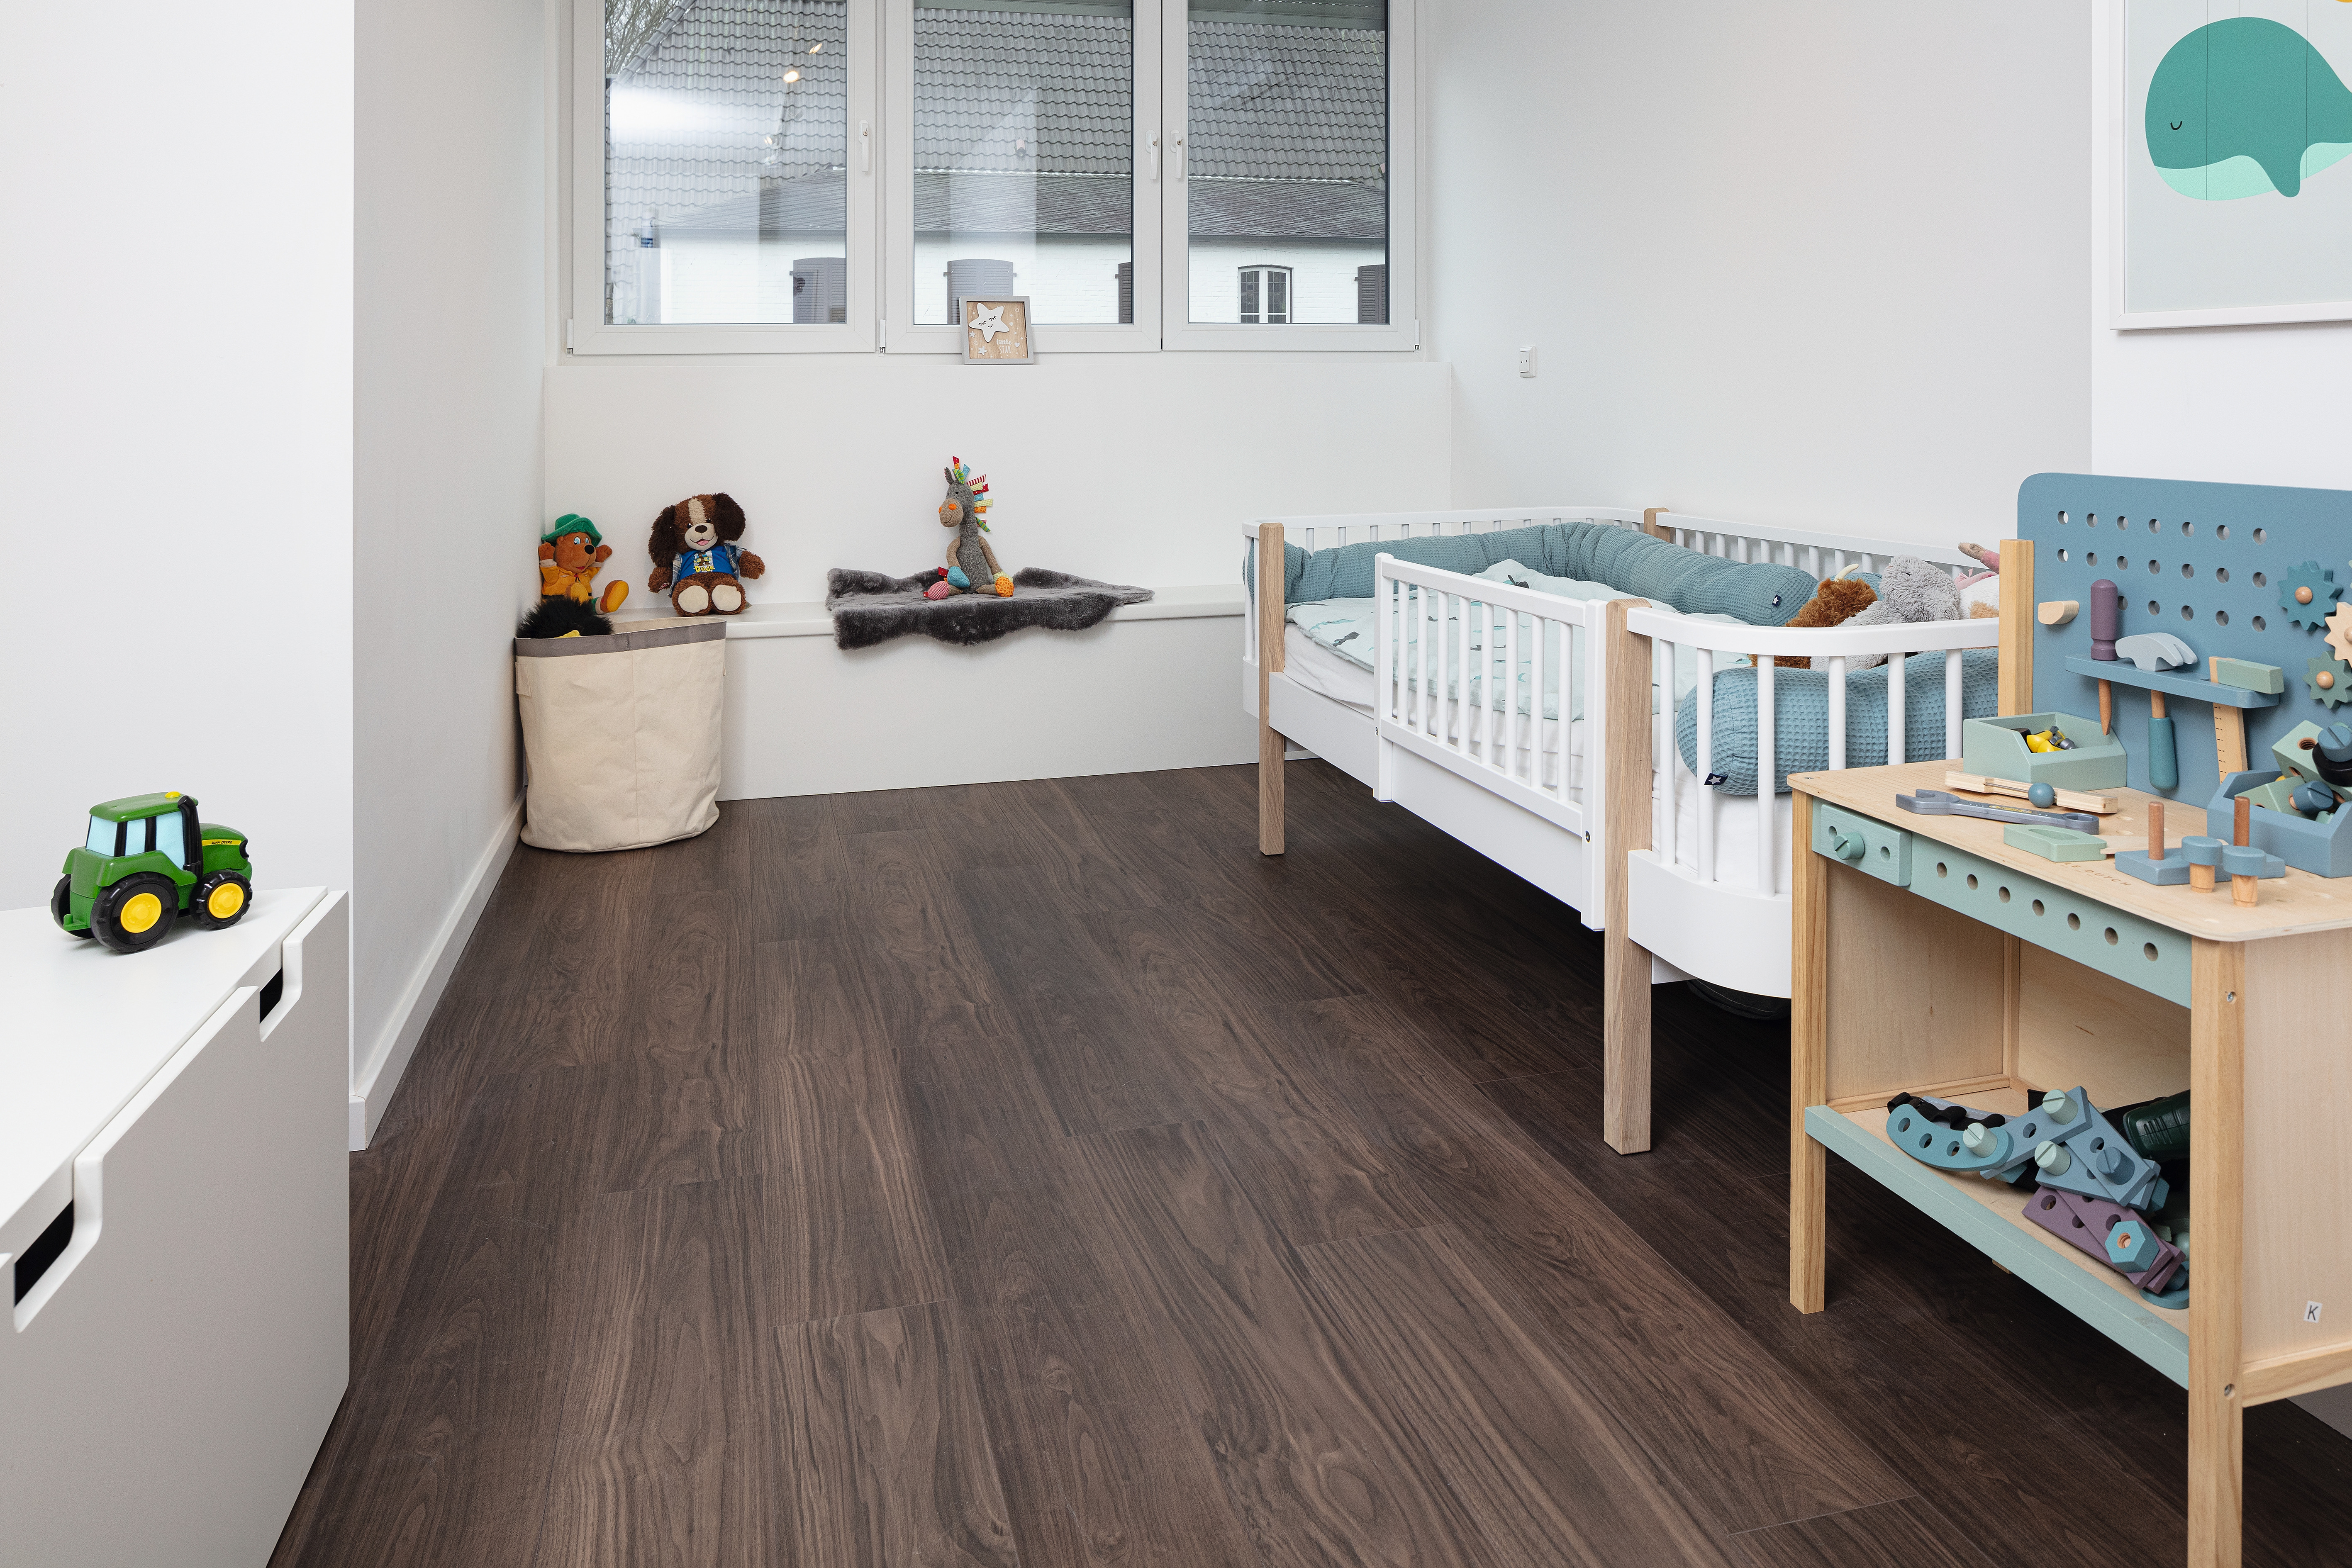 Der EGGER Comfort-Boden ist der perfekte Fussboden zum Spielen für Kinder. Die beiden elastischen Korklagen vermitteln ein sanftes, weiches Gefühl und laden zum Barfussgehen ein. 